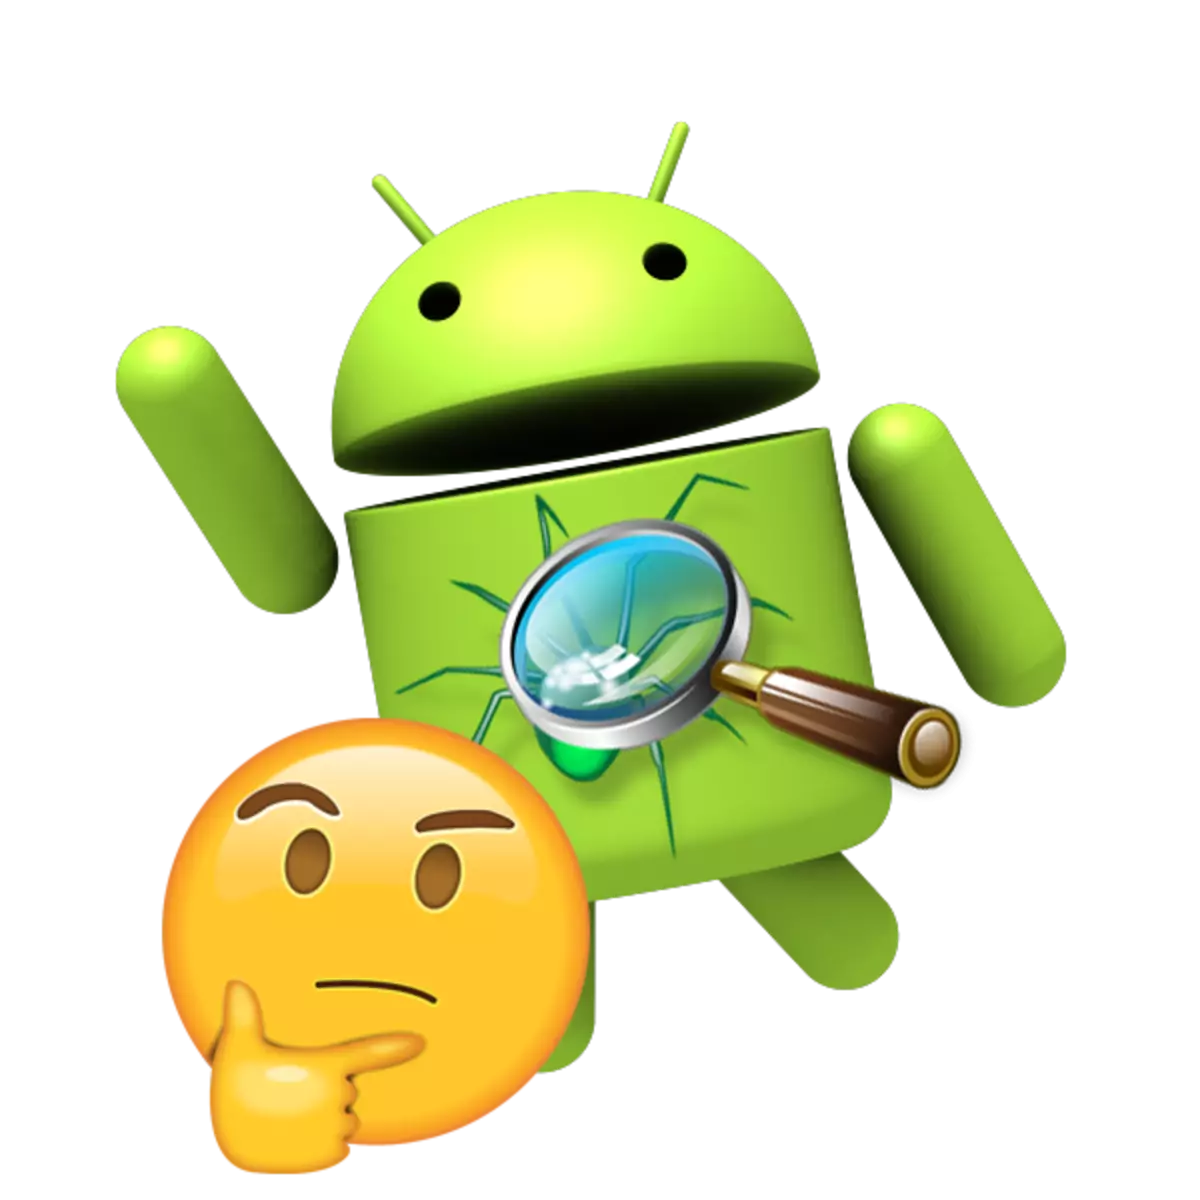 Ngaba i-antivirus ifuna i-Android Smartphone